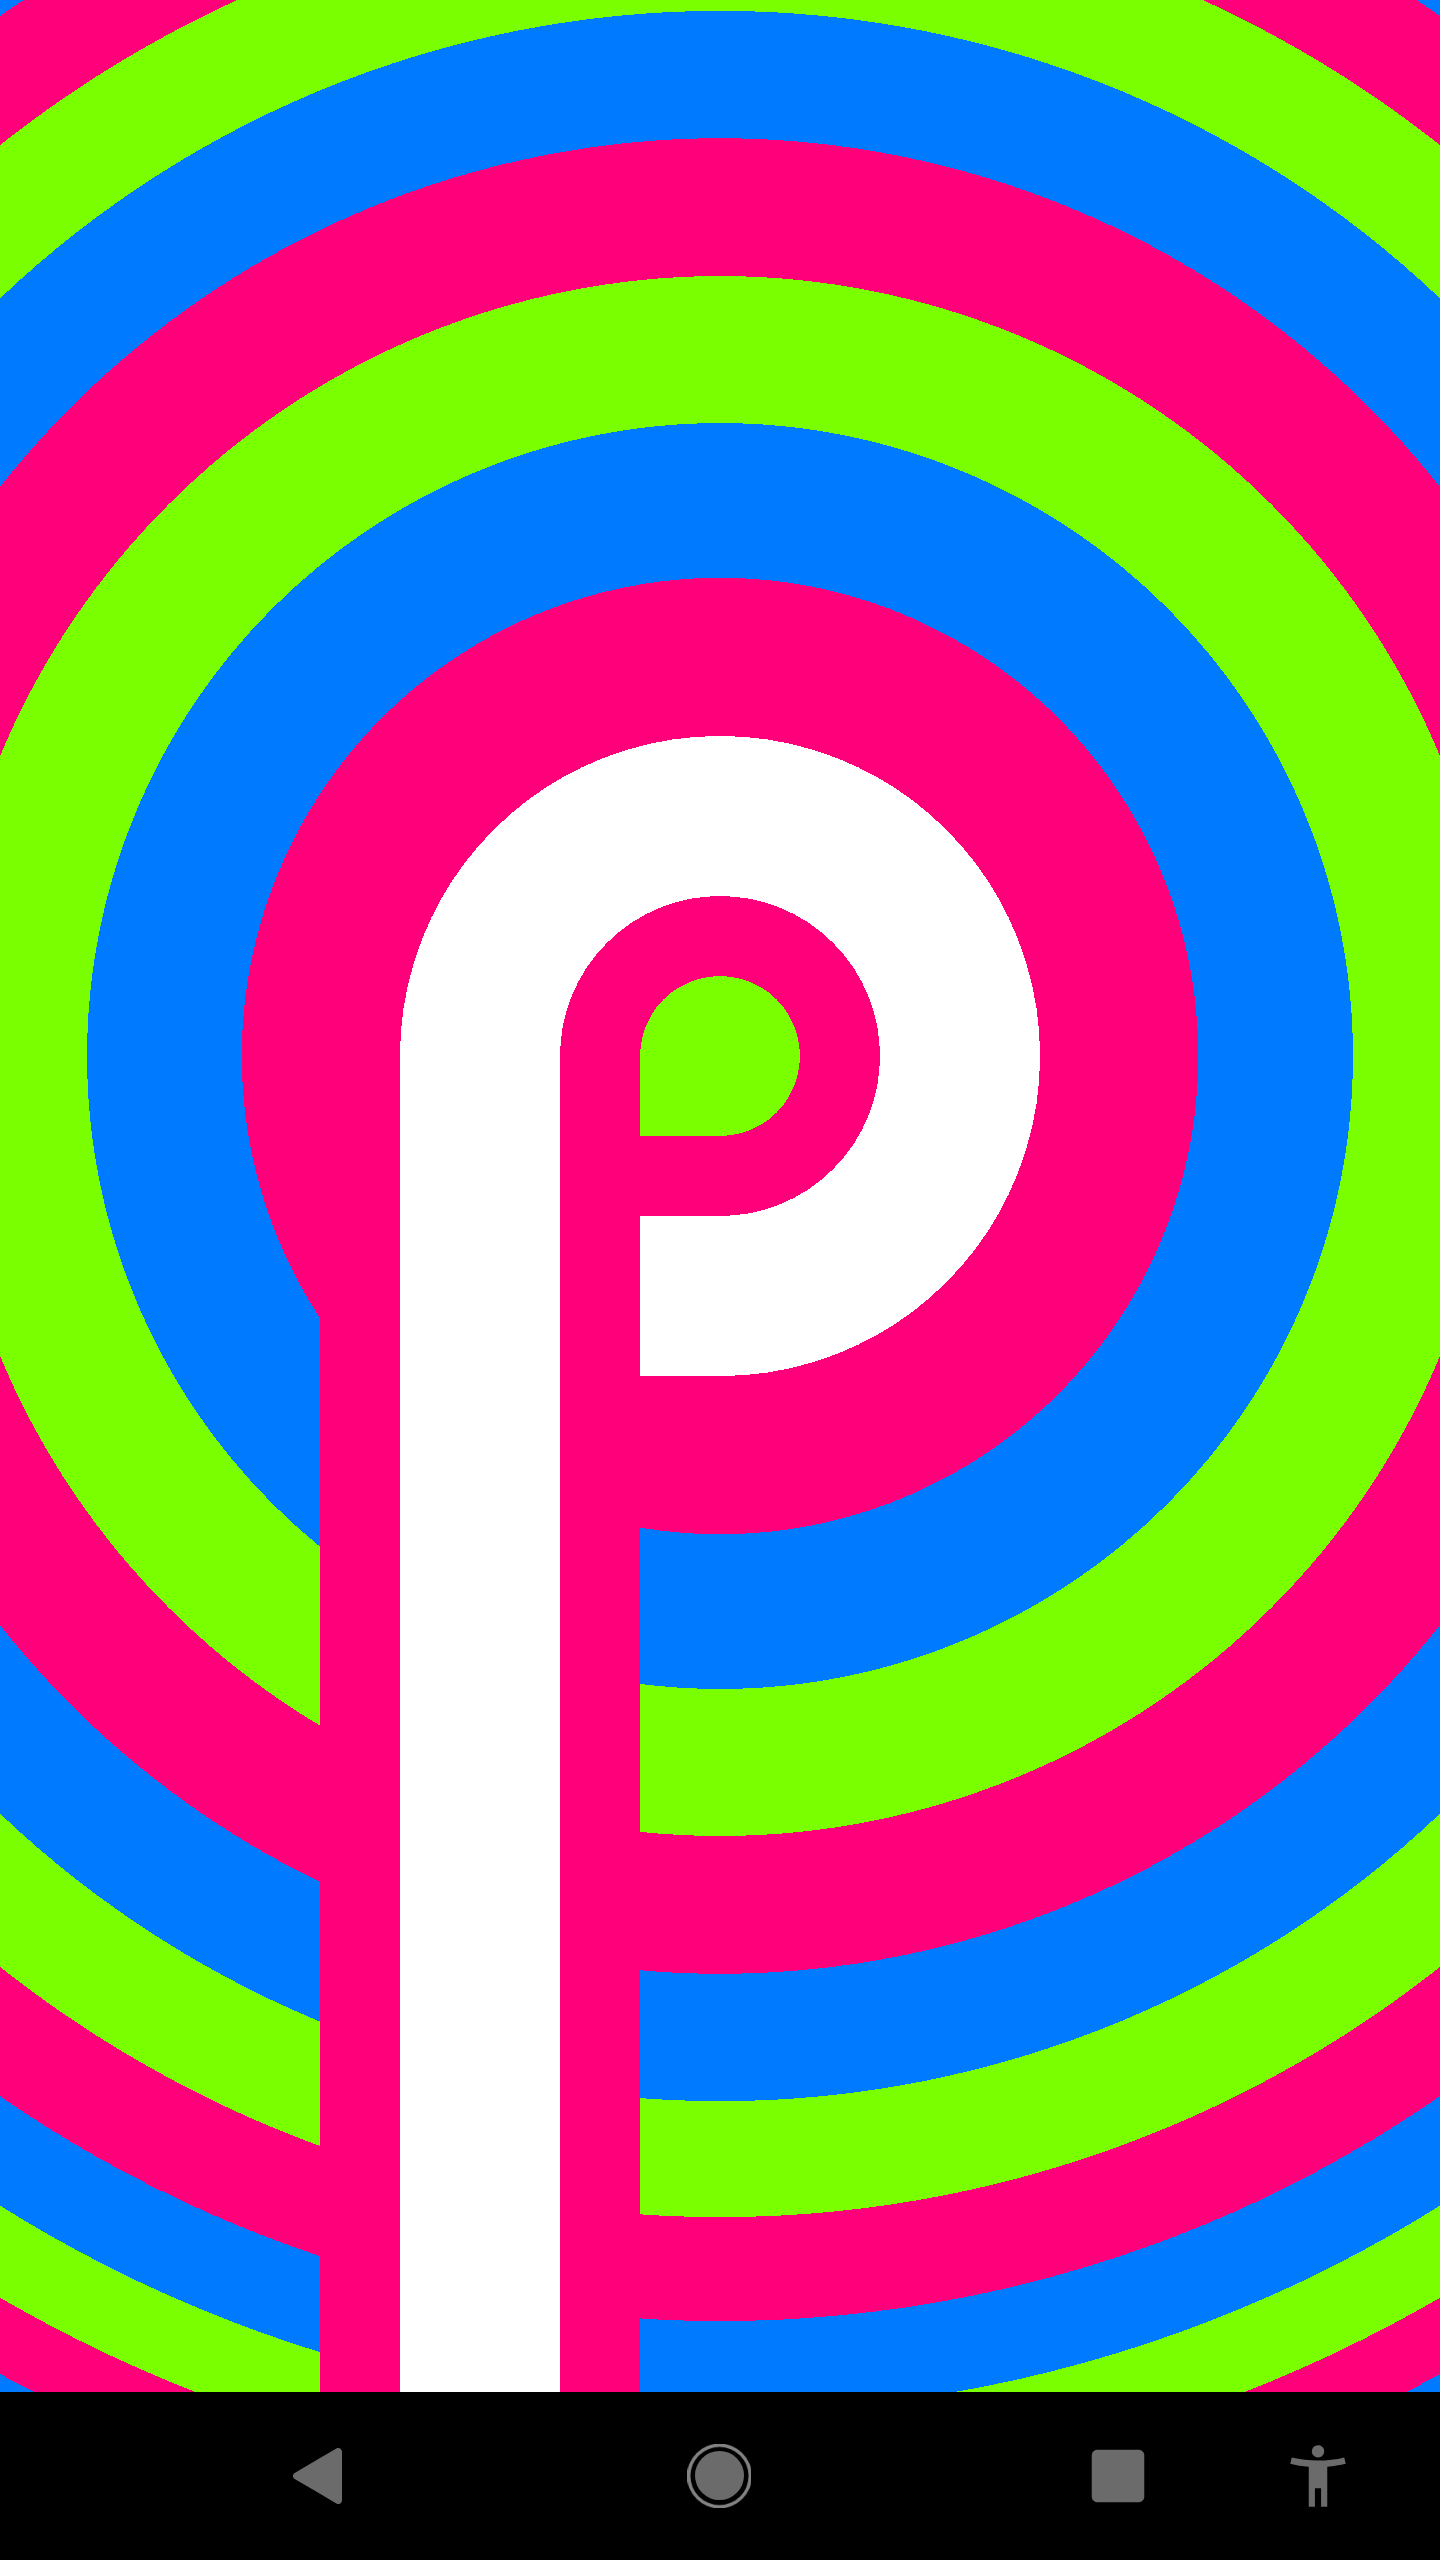 Bei diesem Easter Egg in Android «Pie» werden die Finderinnen und Finder mit hypnotisierenden, bewegten Farben belohnt. Googeln Sie nach "A